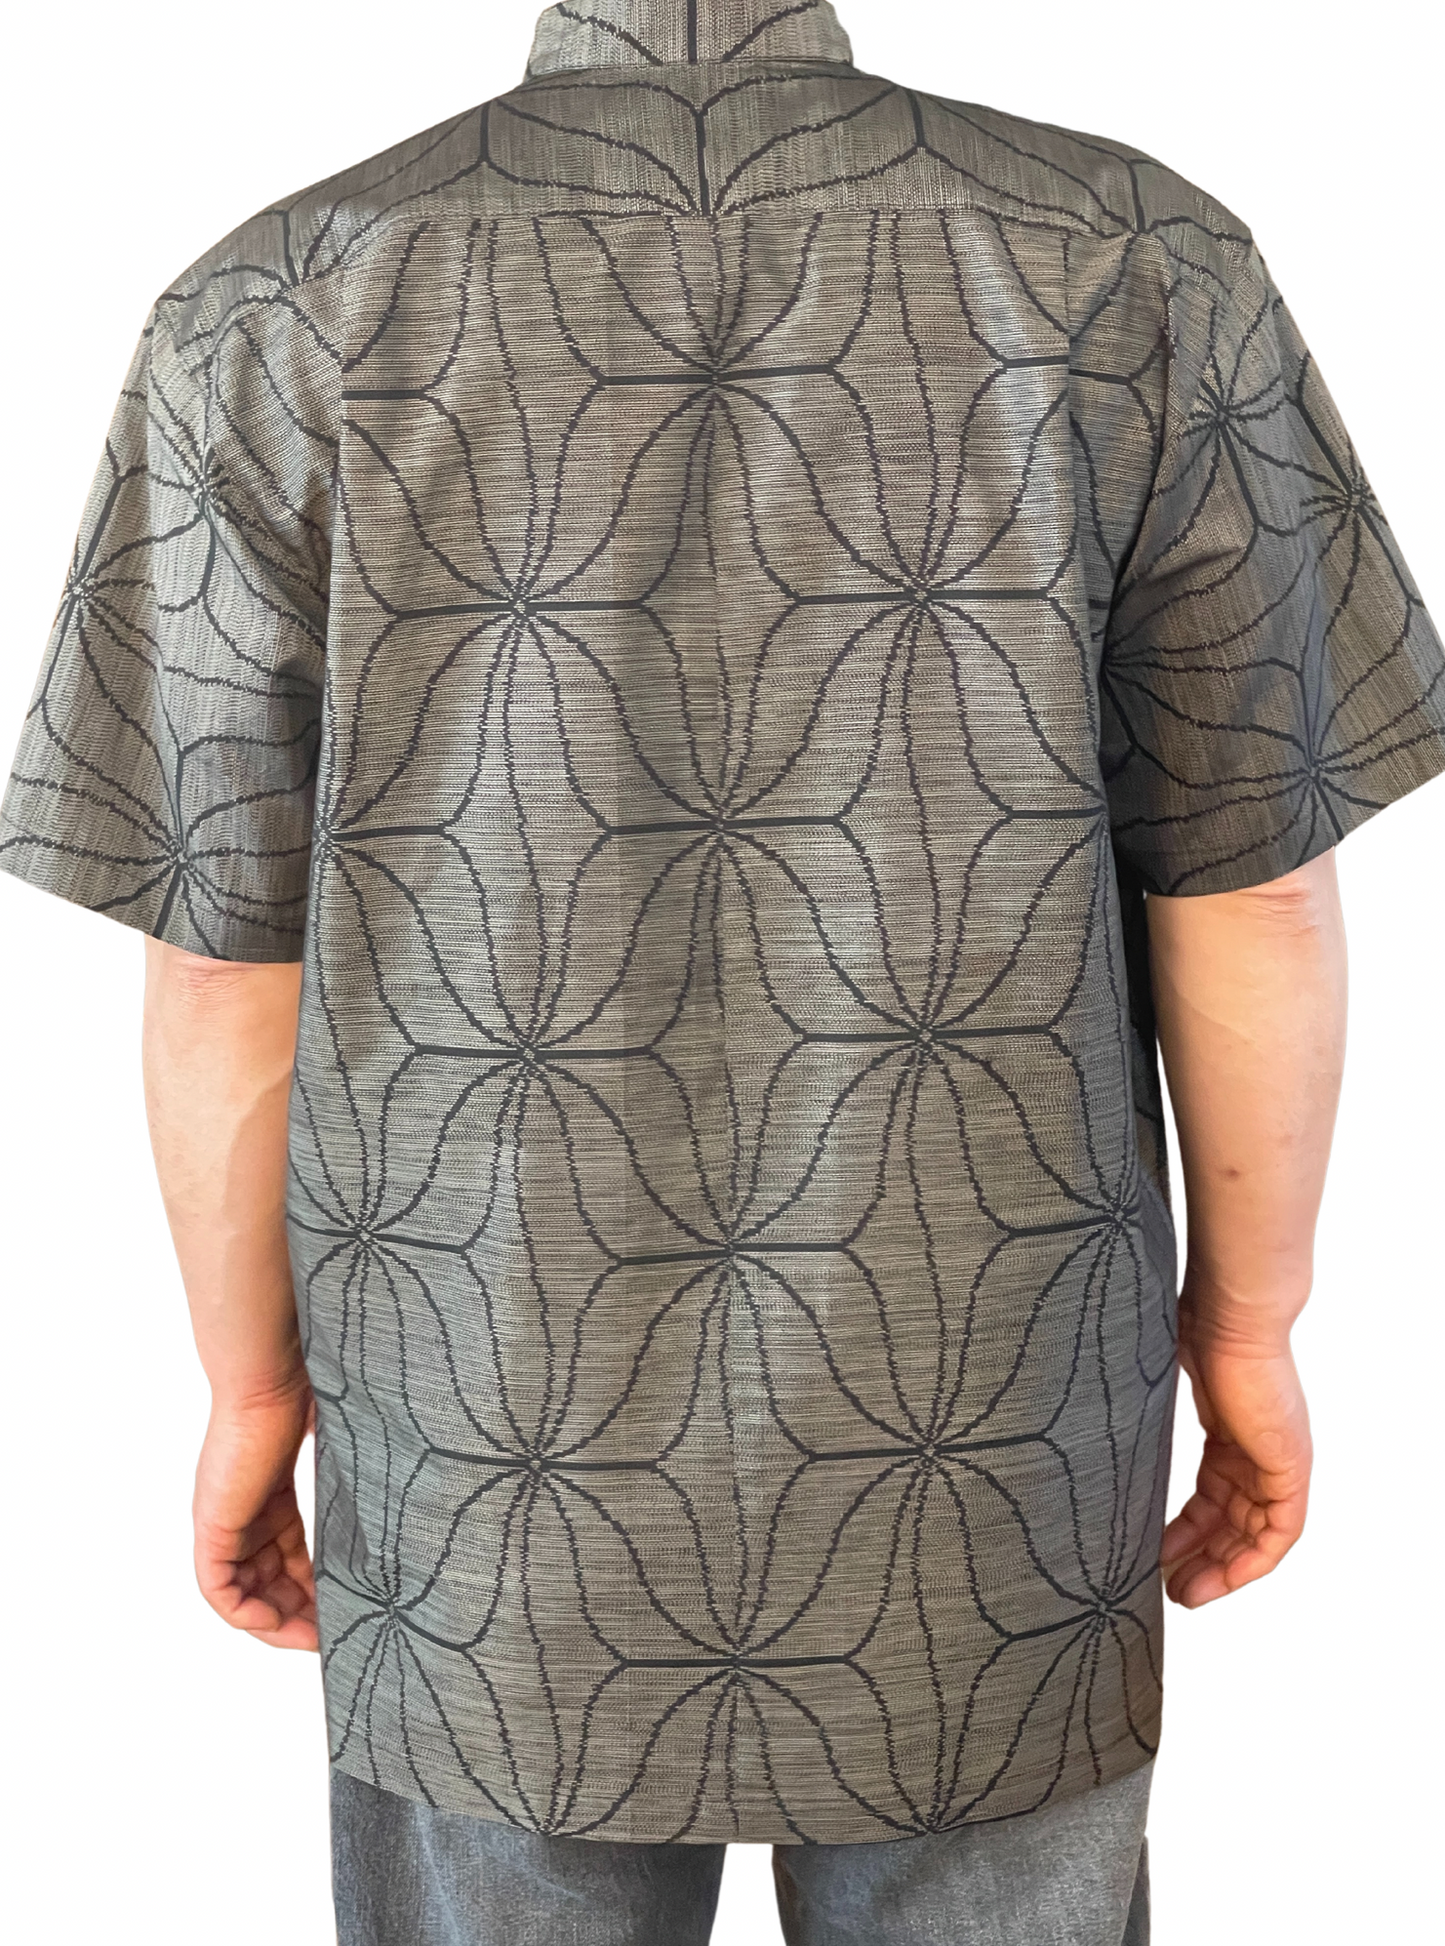 [世界上只有一件一件的男士衬衫]是继承日本风格的最好的老式oshima tsumugi衬衫